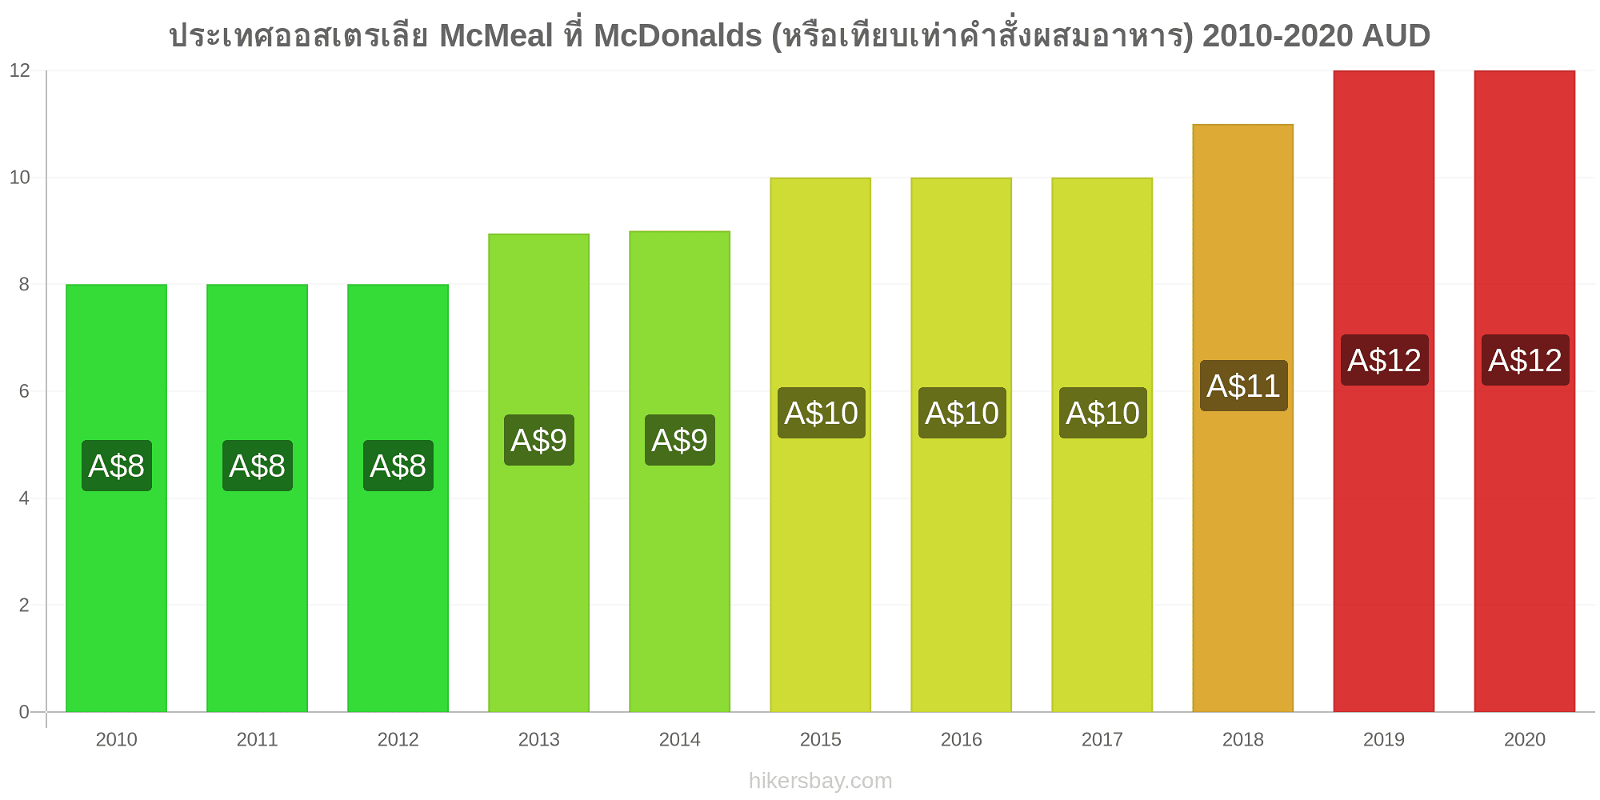 ประเทศออสเตรเลีย การเปลี่ยนแปลงราคา McMeal ที่ McDonalds (หรือเทียบเท่าคำสั่งผสมอาหาร) hikersbay.com